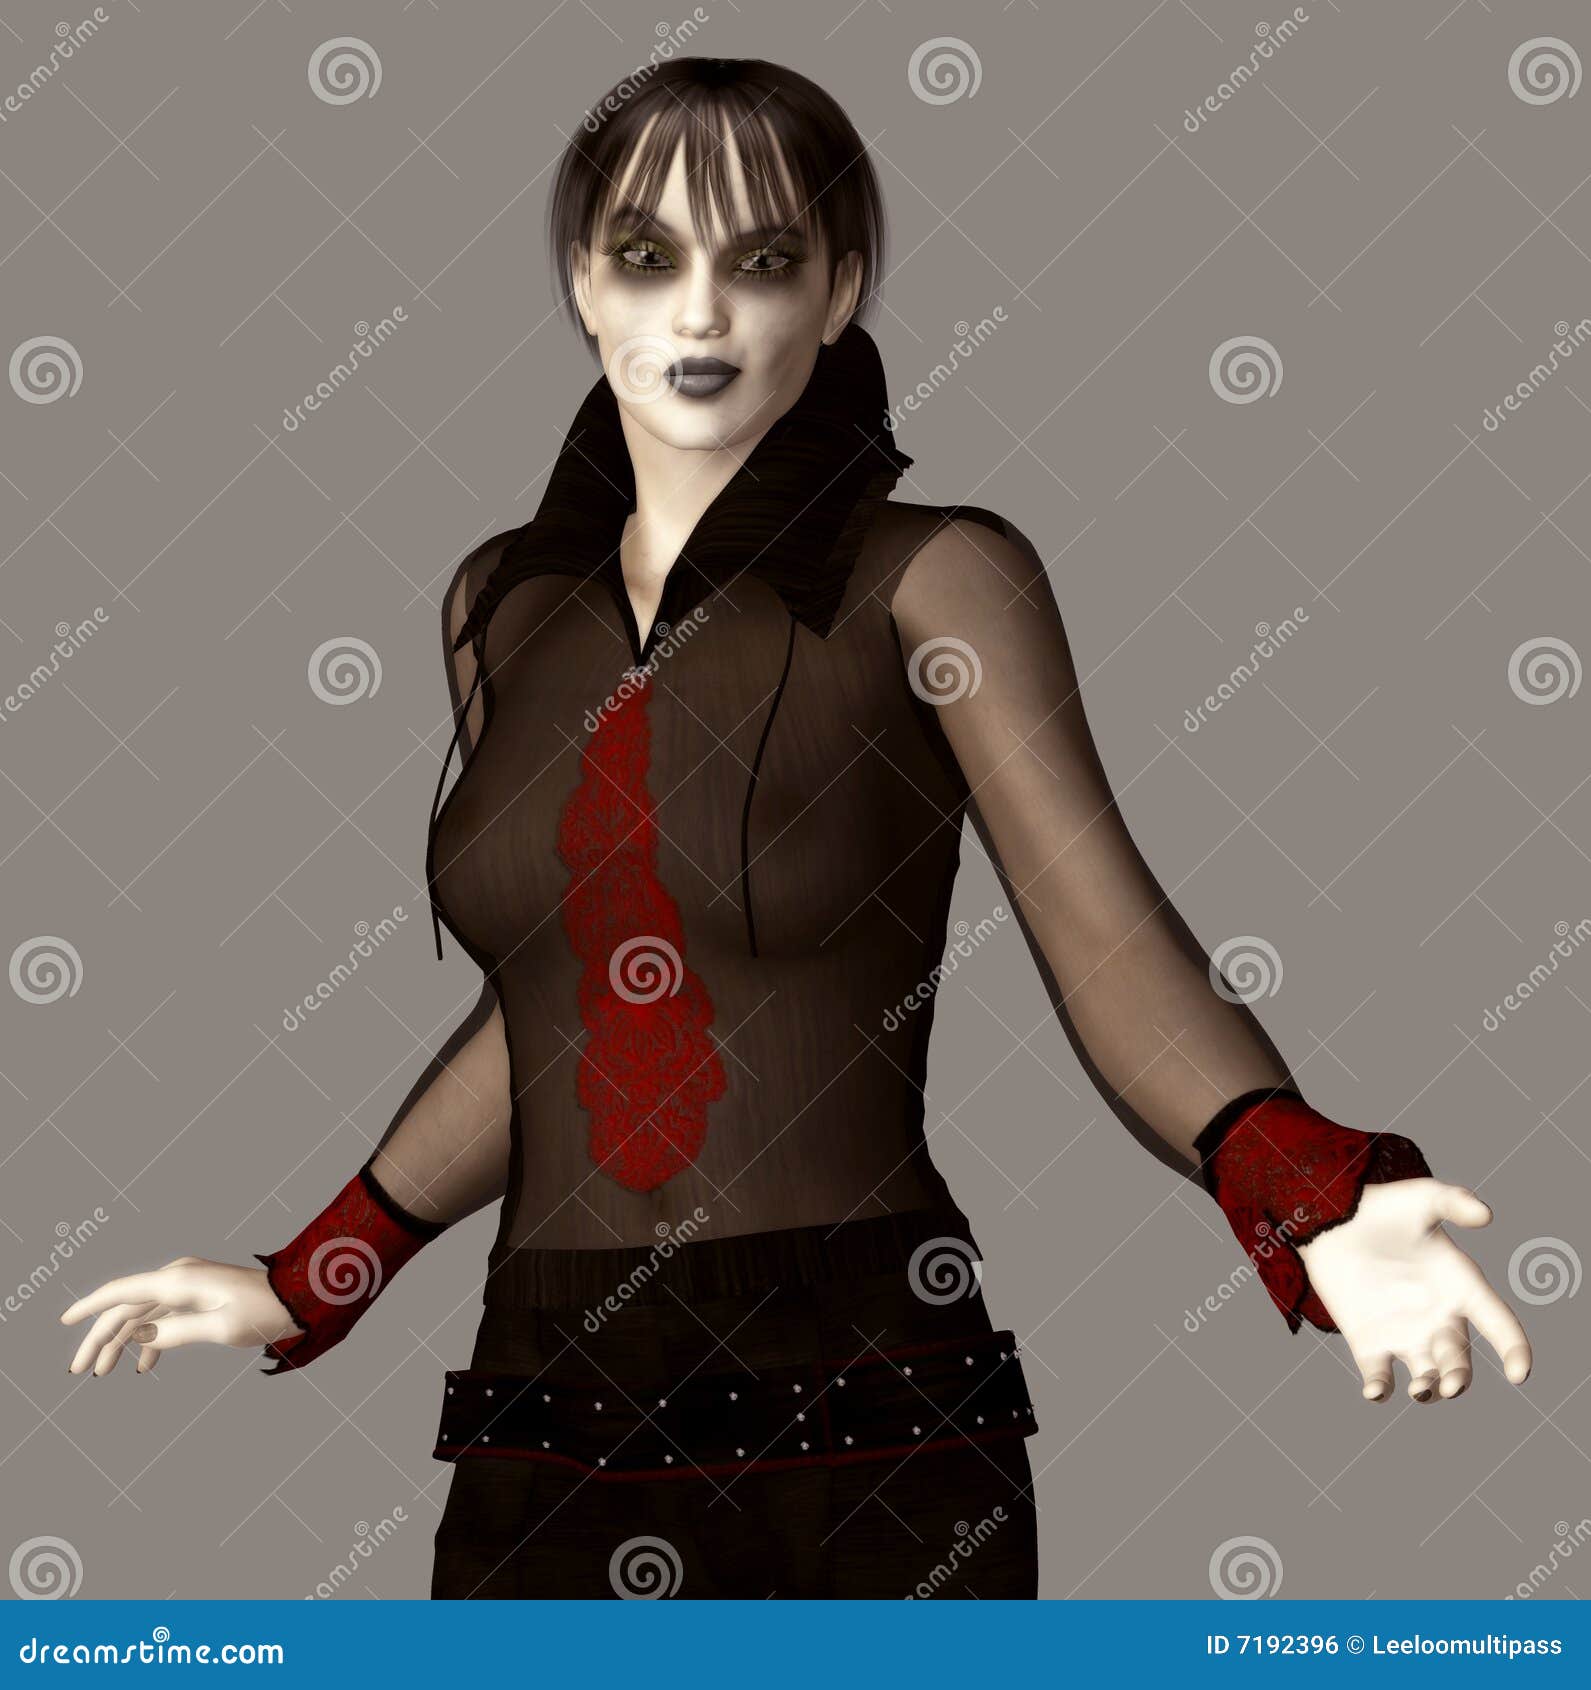 Gothic Girl Royalty Free Stock Image Image 7192396